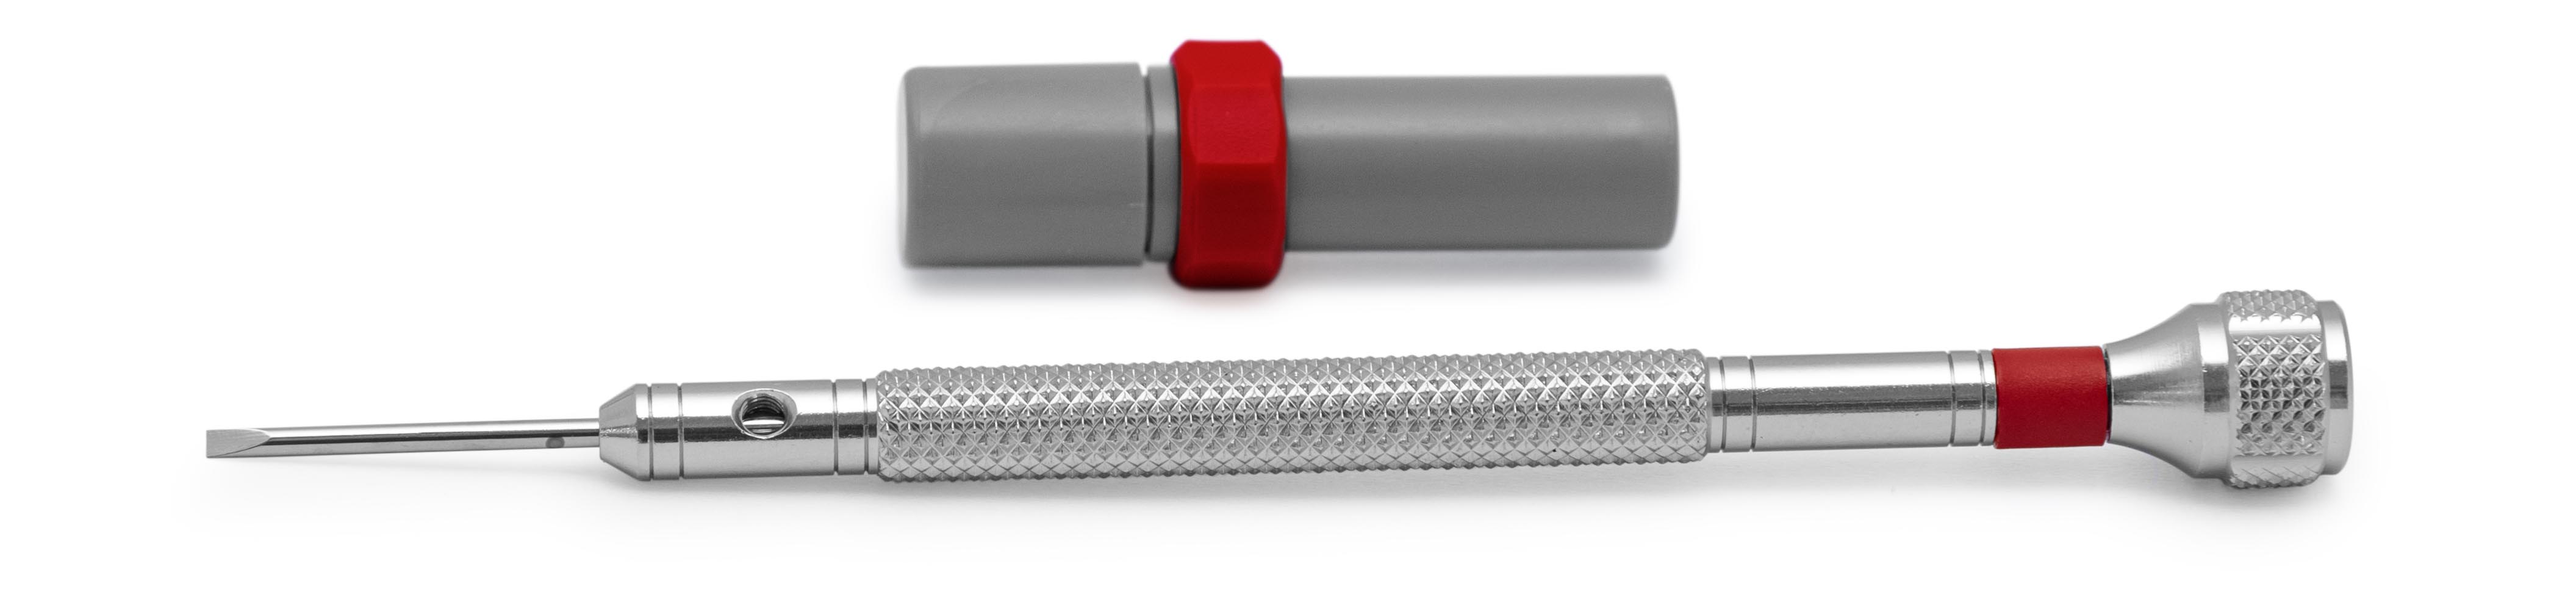 Bergeon 30080-F Schraubendreher, Klinge 1,2 mm, rot, mit Ersatzklingen